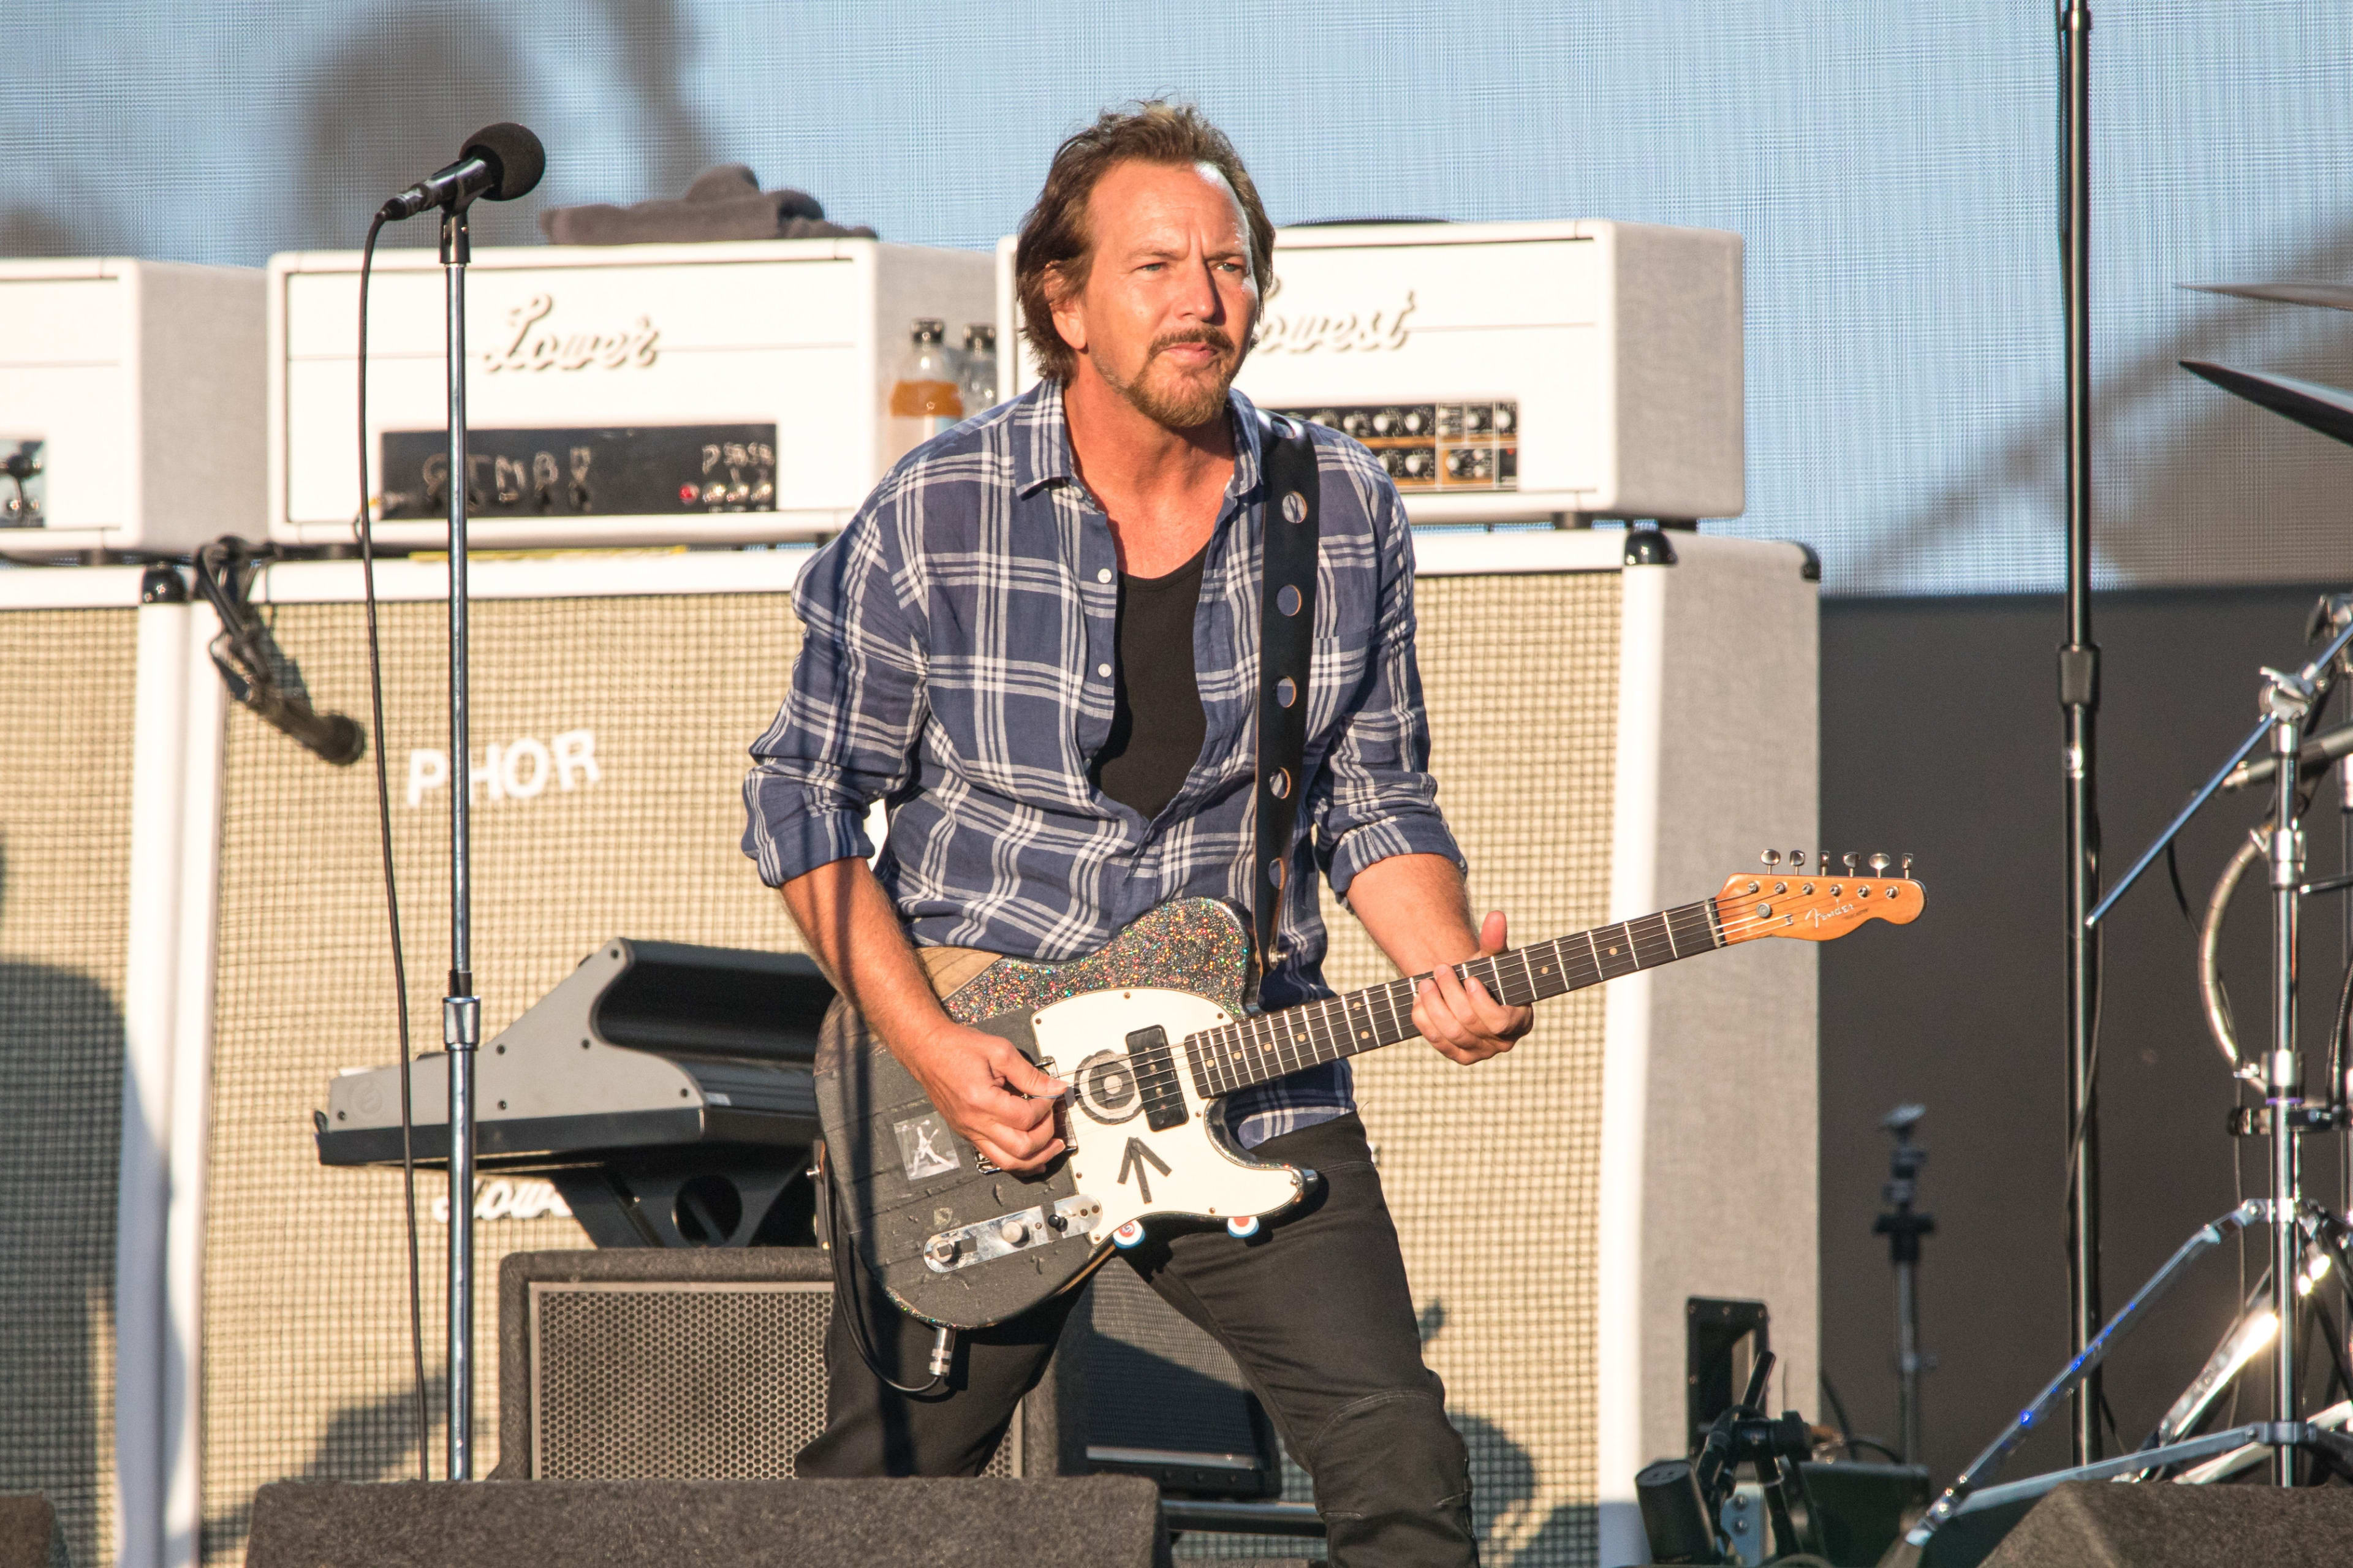 Domper voor fans: concert Pearl Jam last minute afgelast